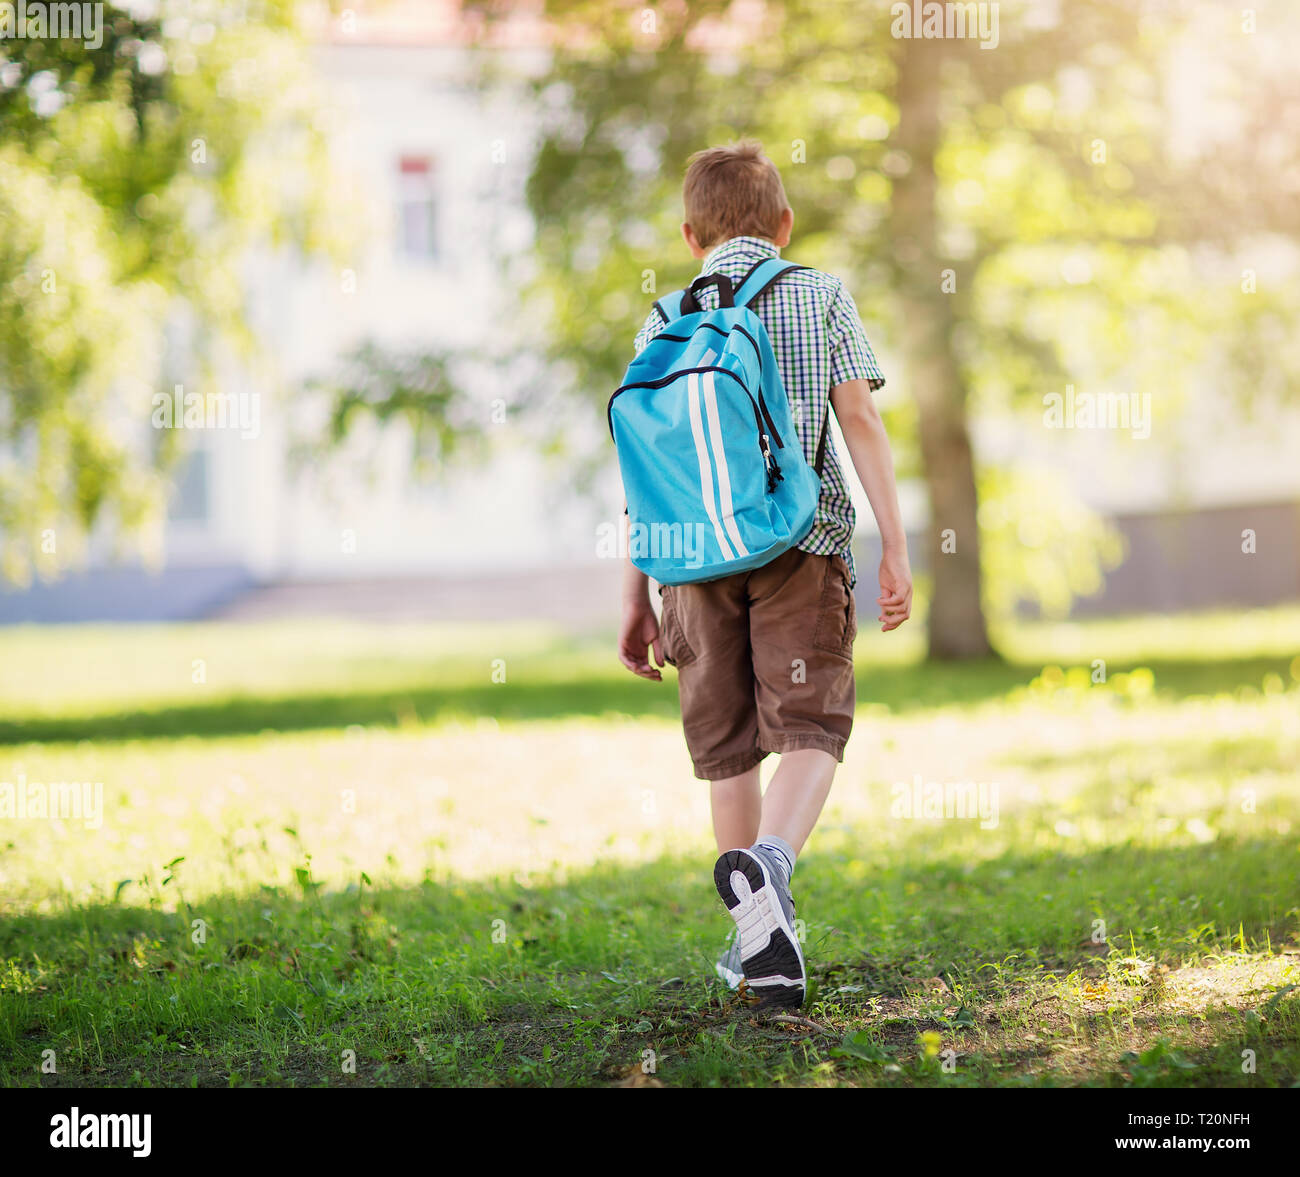 Junge mit Rucksack infront von einem Schulgebäude Stockfoto